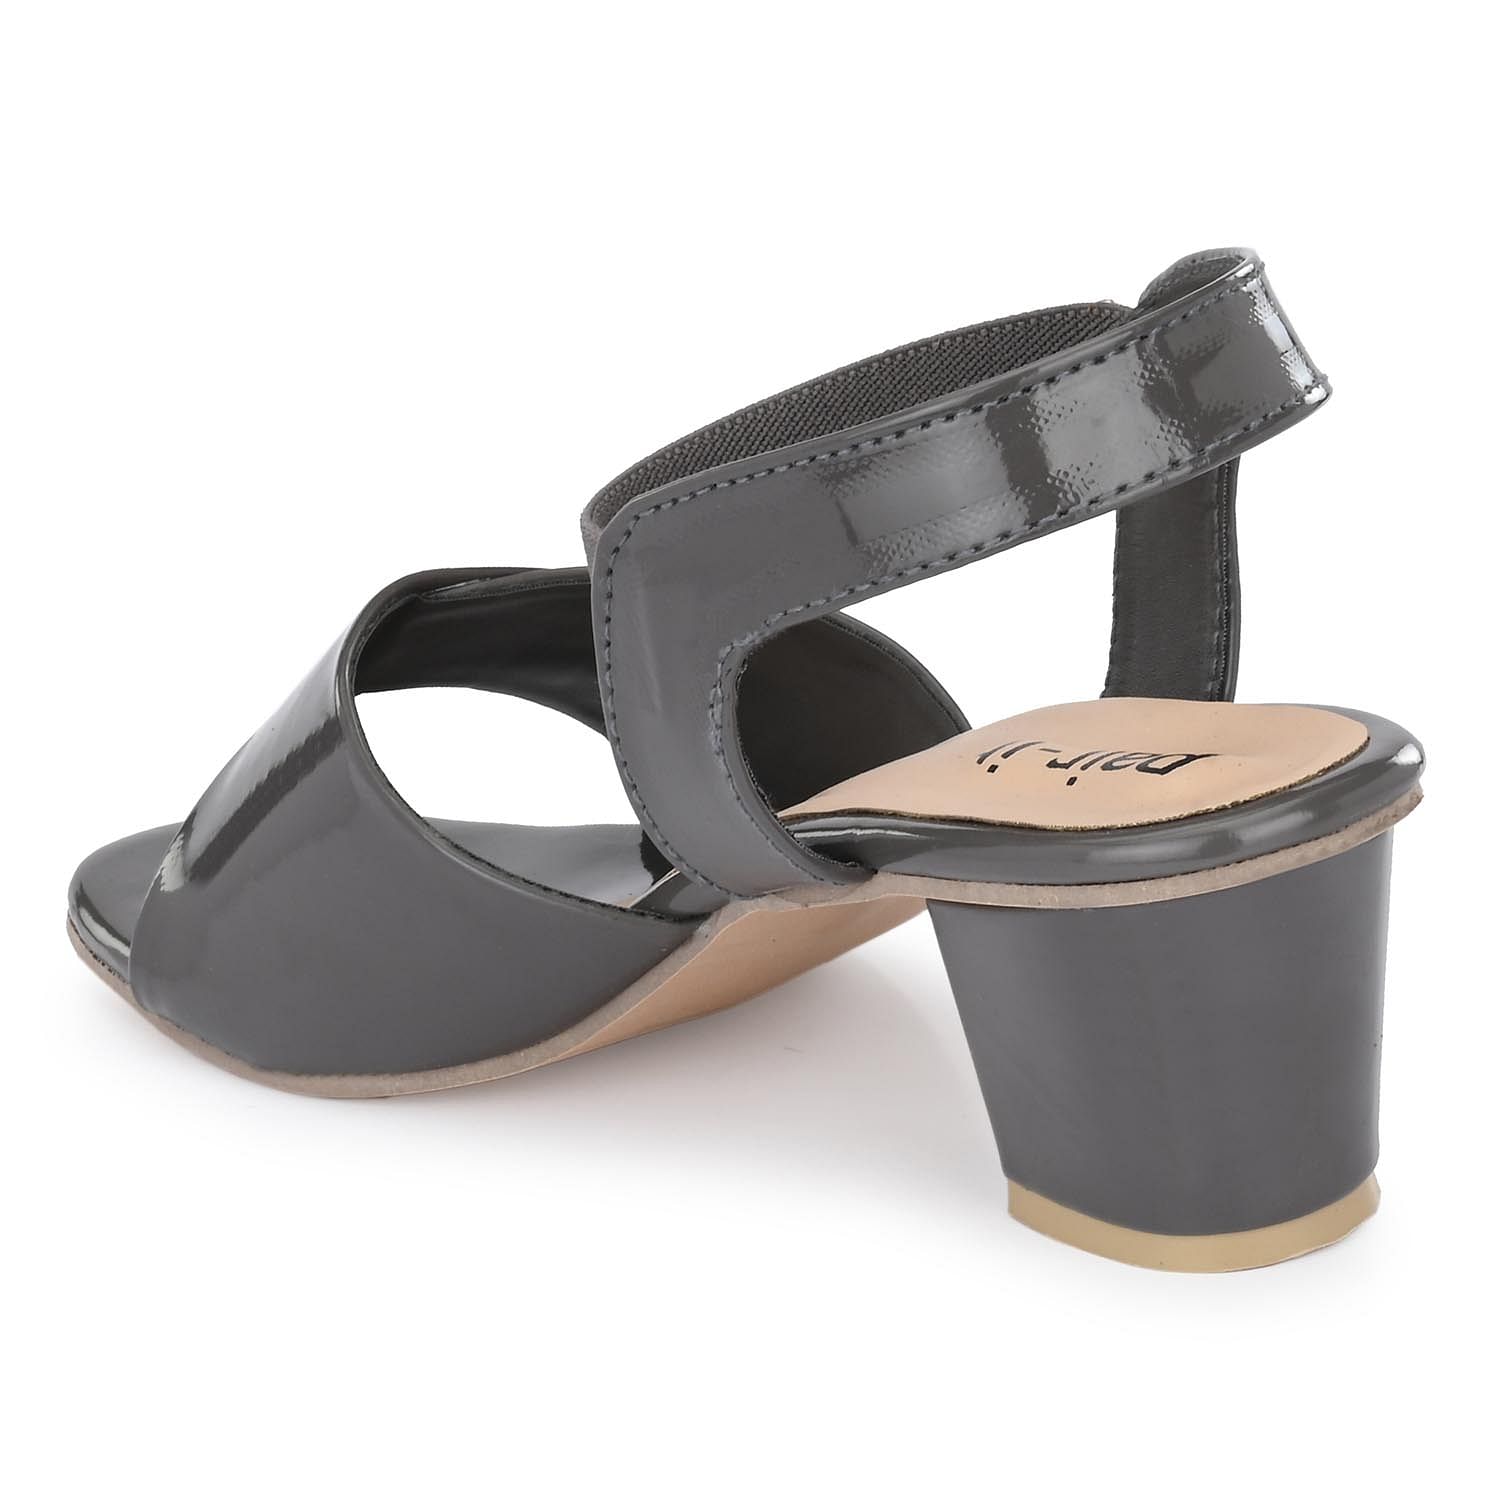 Pair-it Ladies Sandal-SH-WMN-Sandal 201-Dark Grey